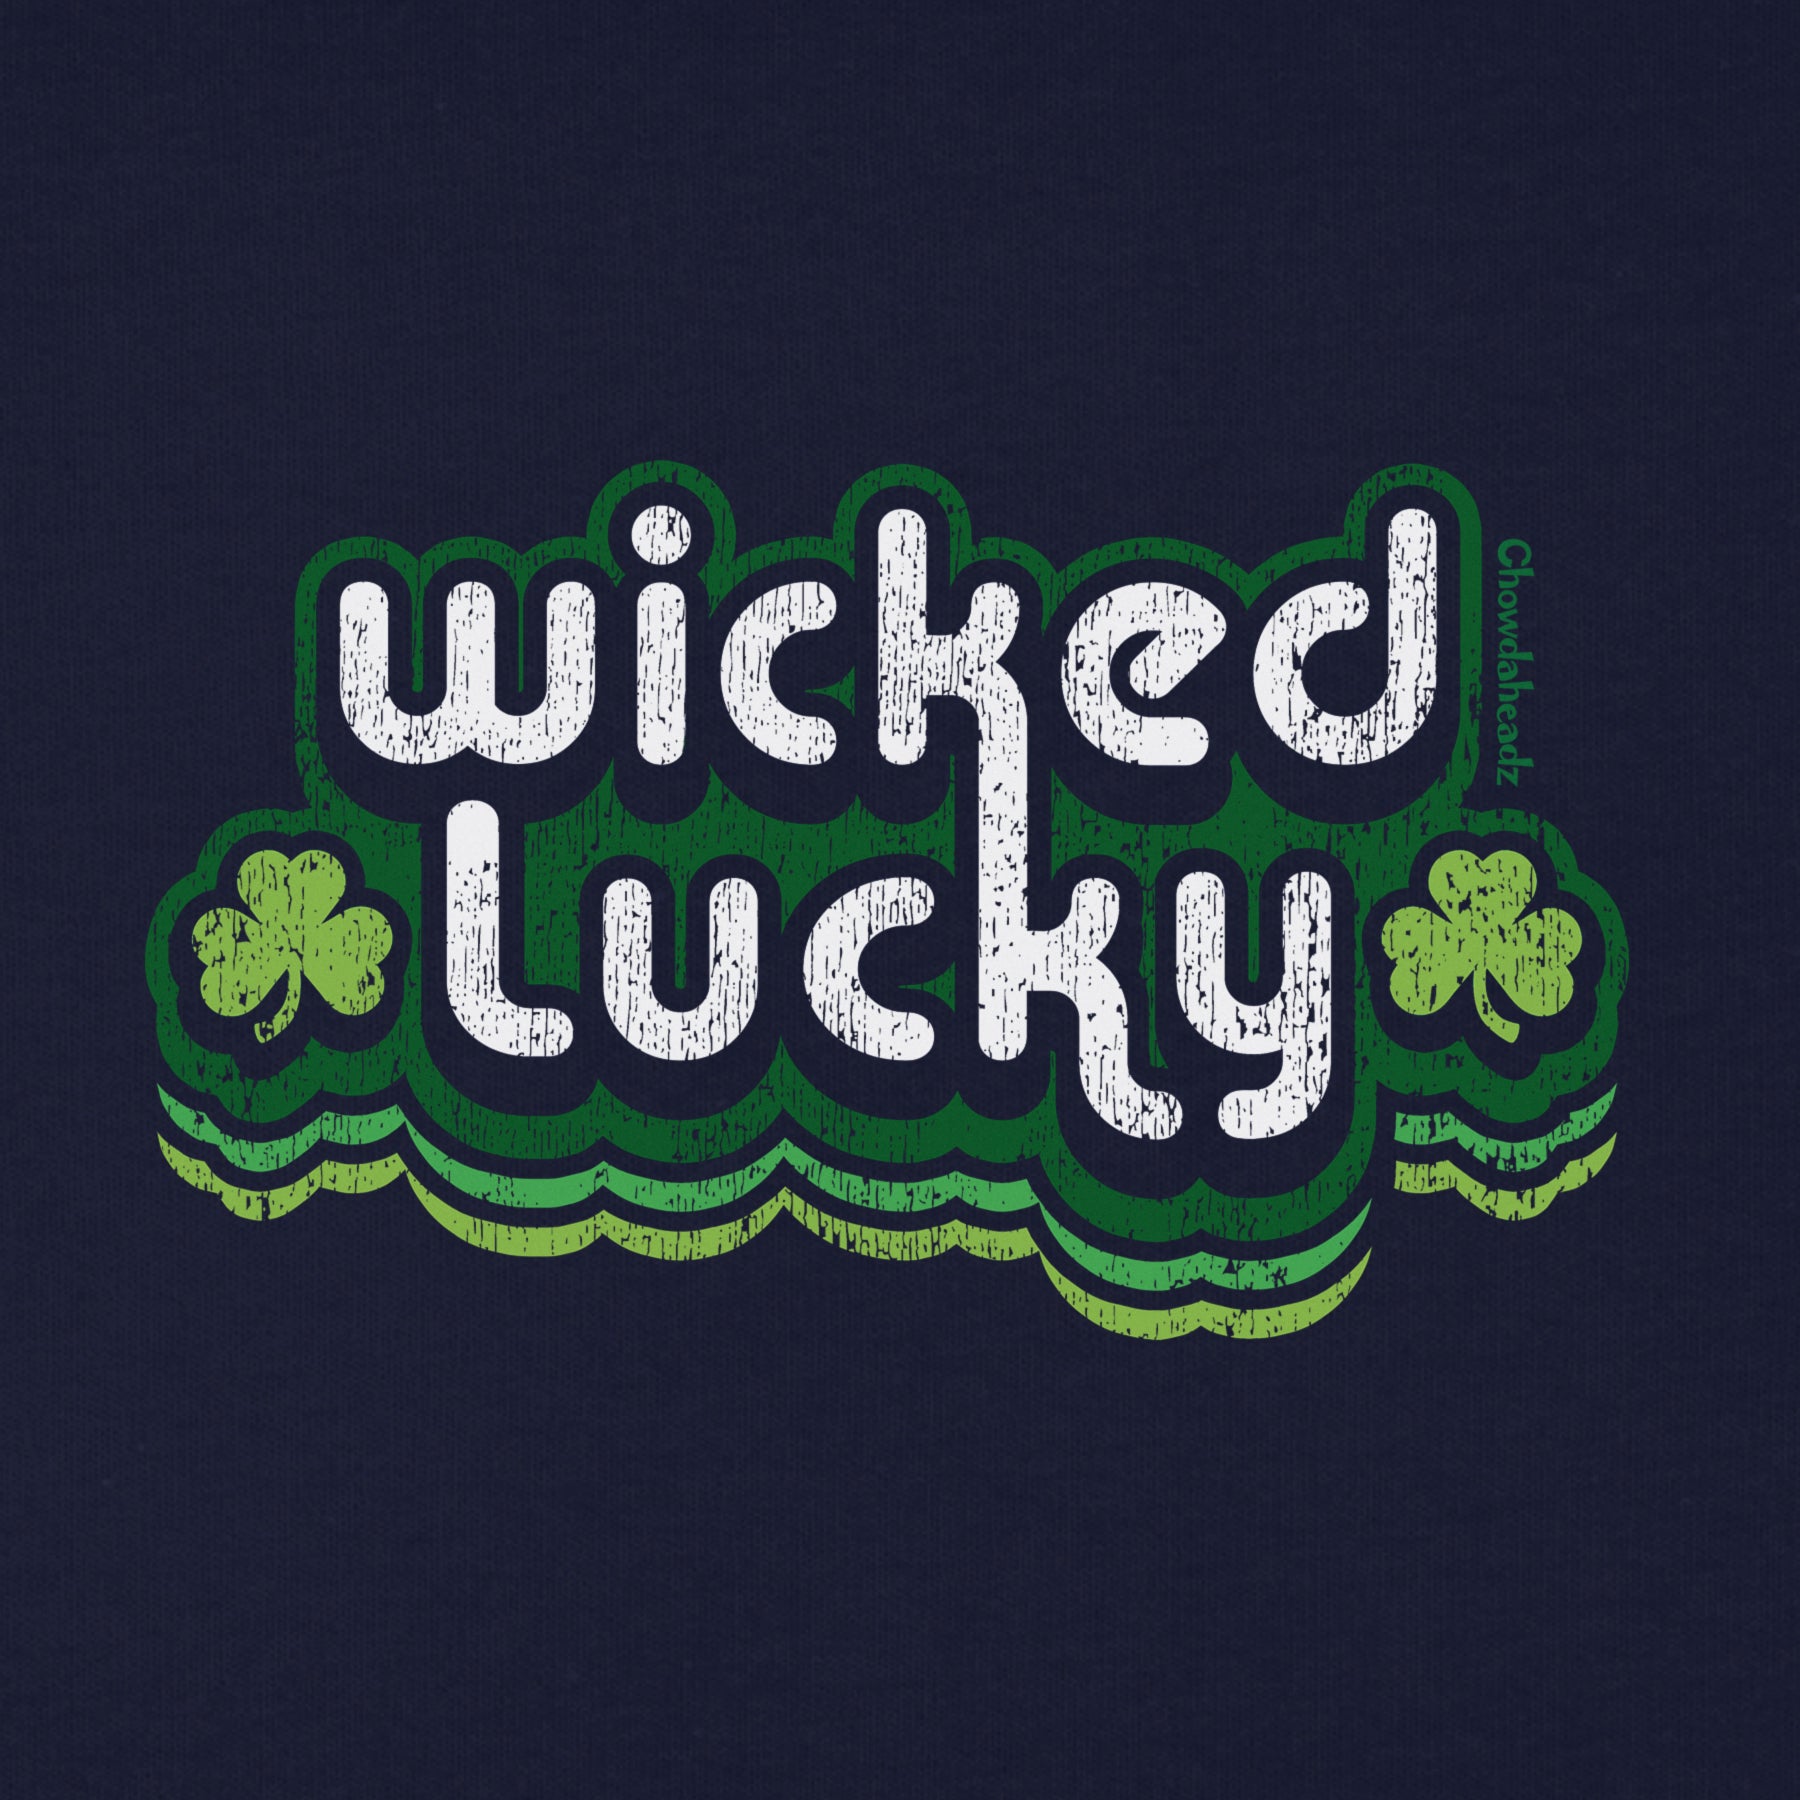 Wicked Lucky Retro Youth Hoodie - Chowdaheadz